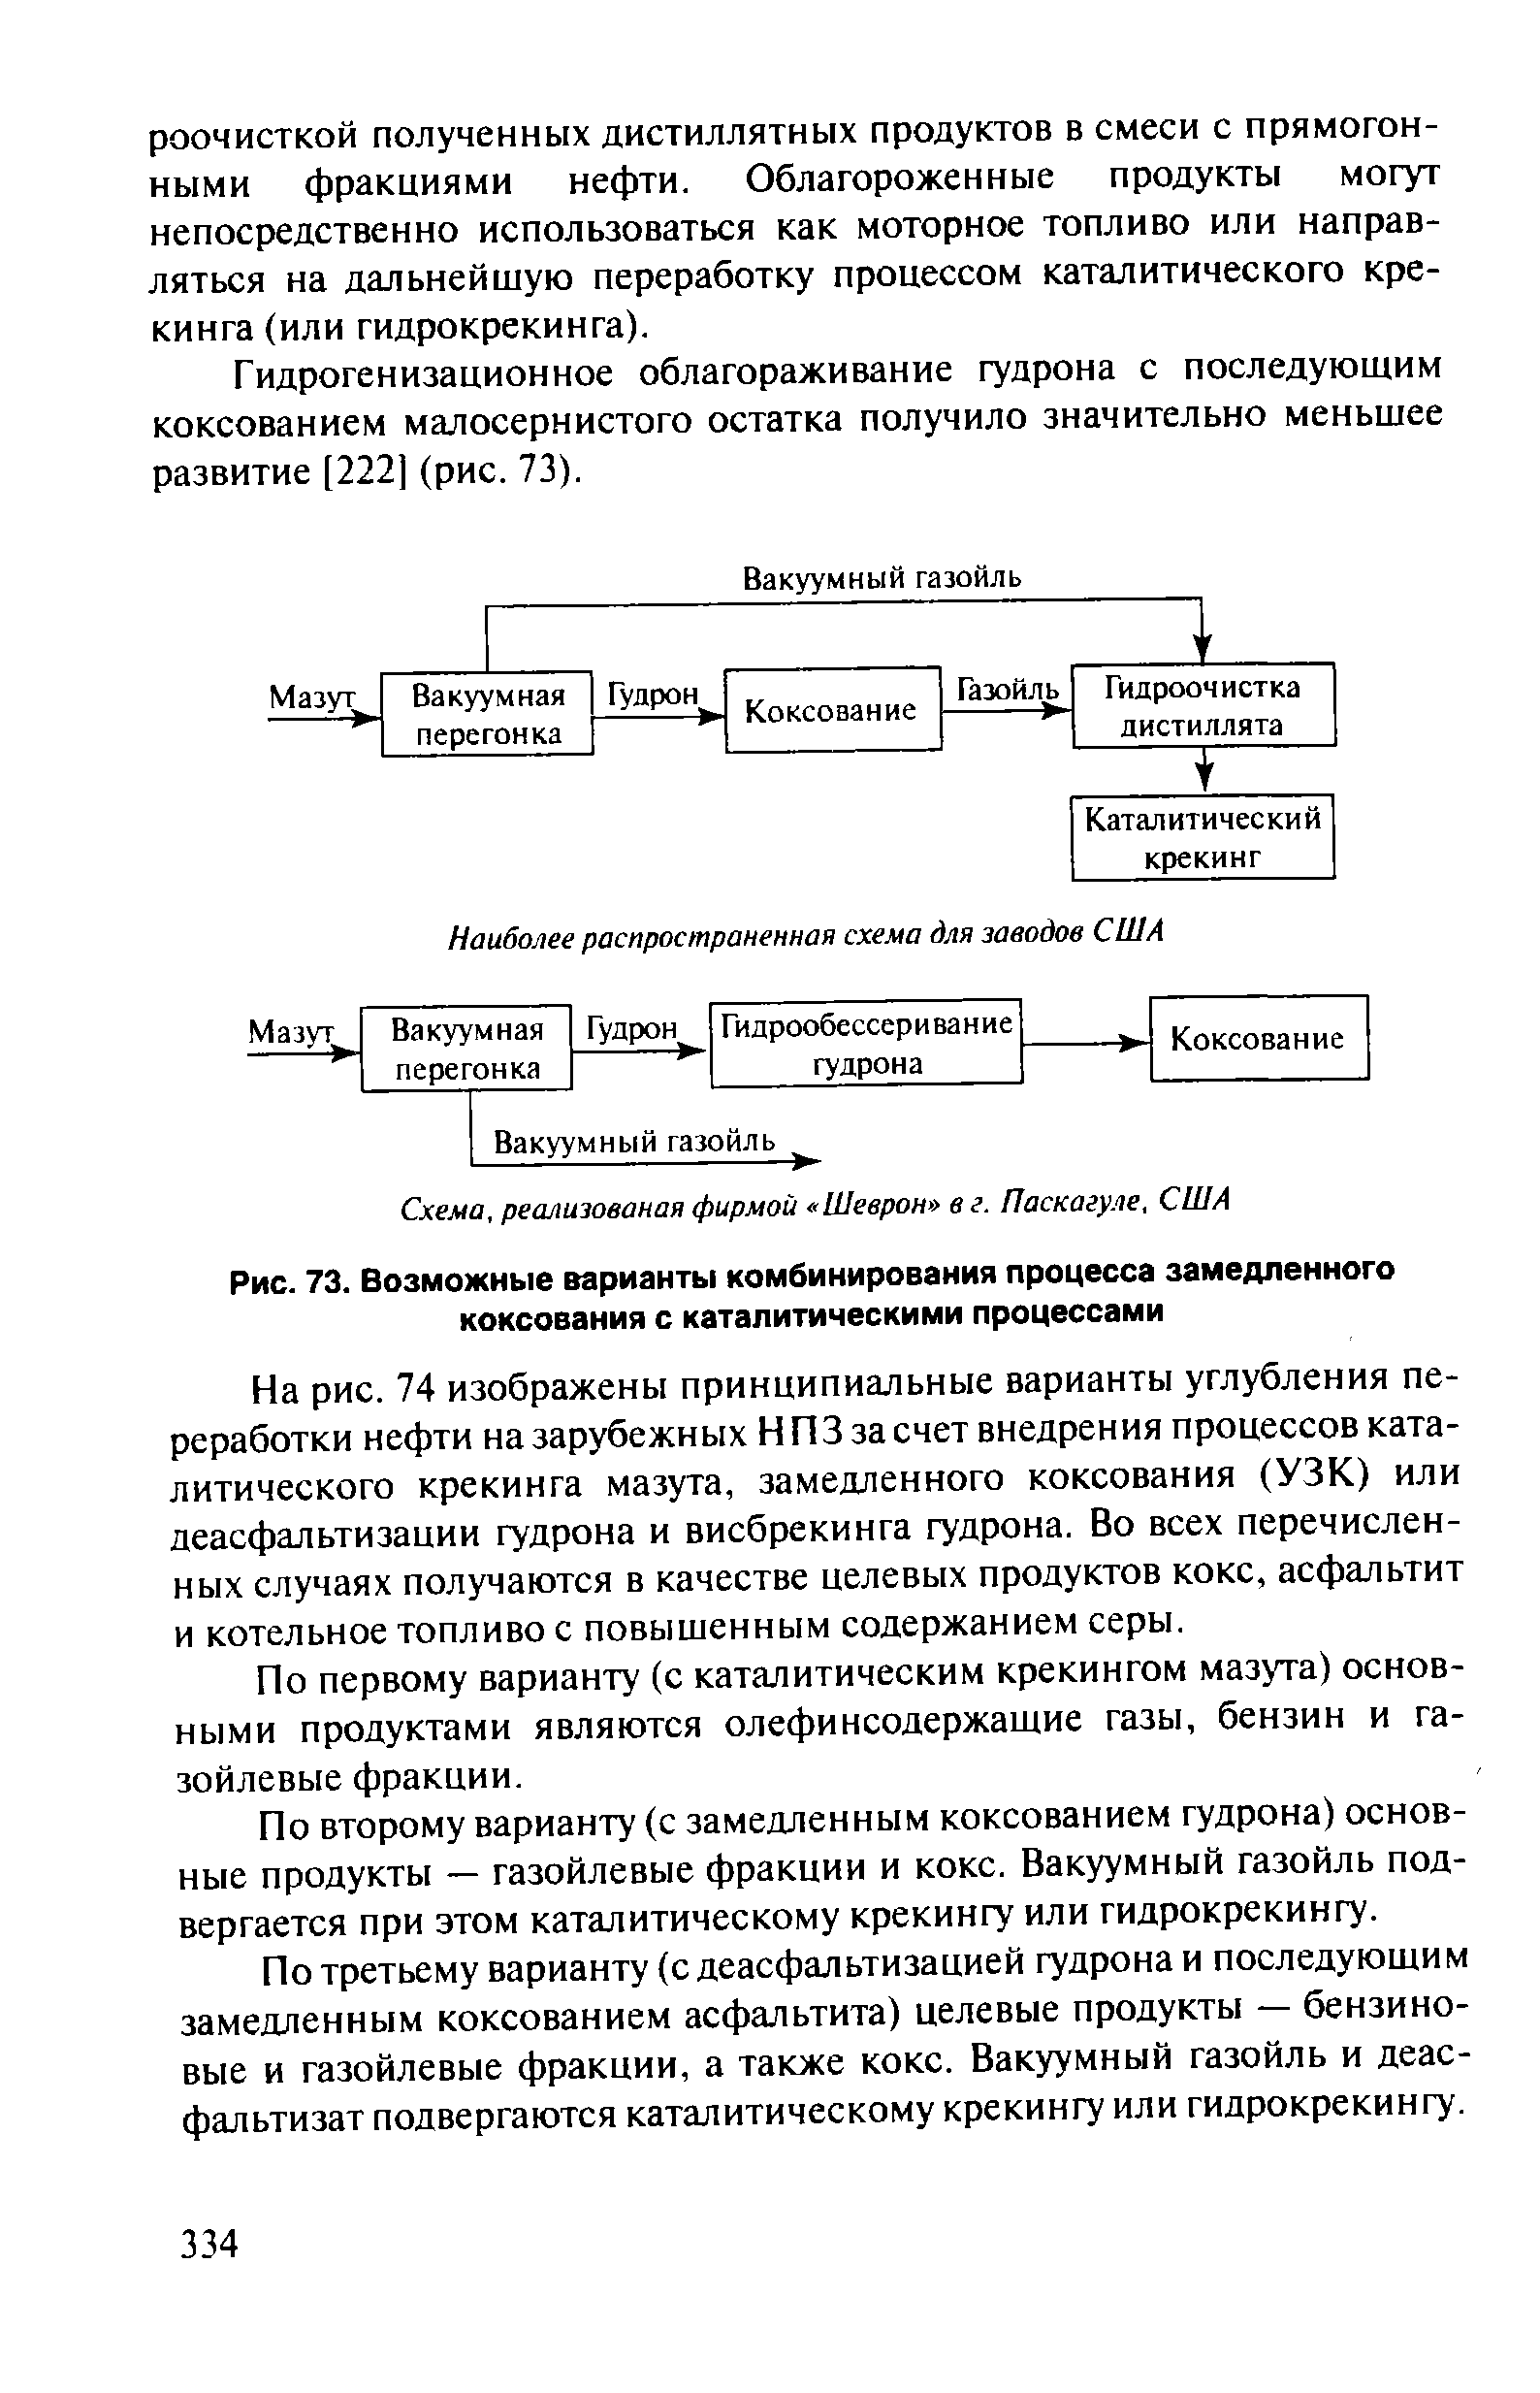 Гидрогенизационное облагораживание гудрона с последуюшим коксованием малосернистого остатка получило значительно меньшее развитие [222] (рис. 73).